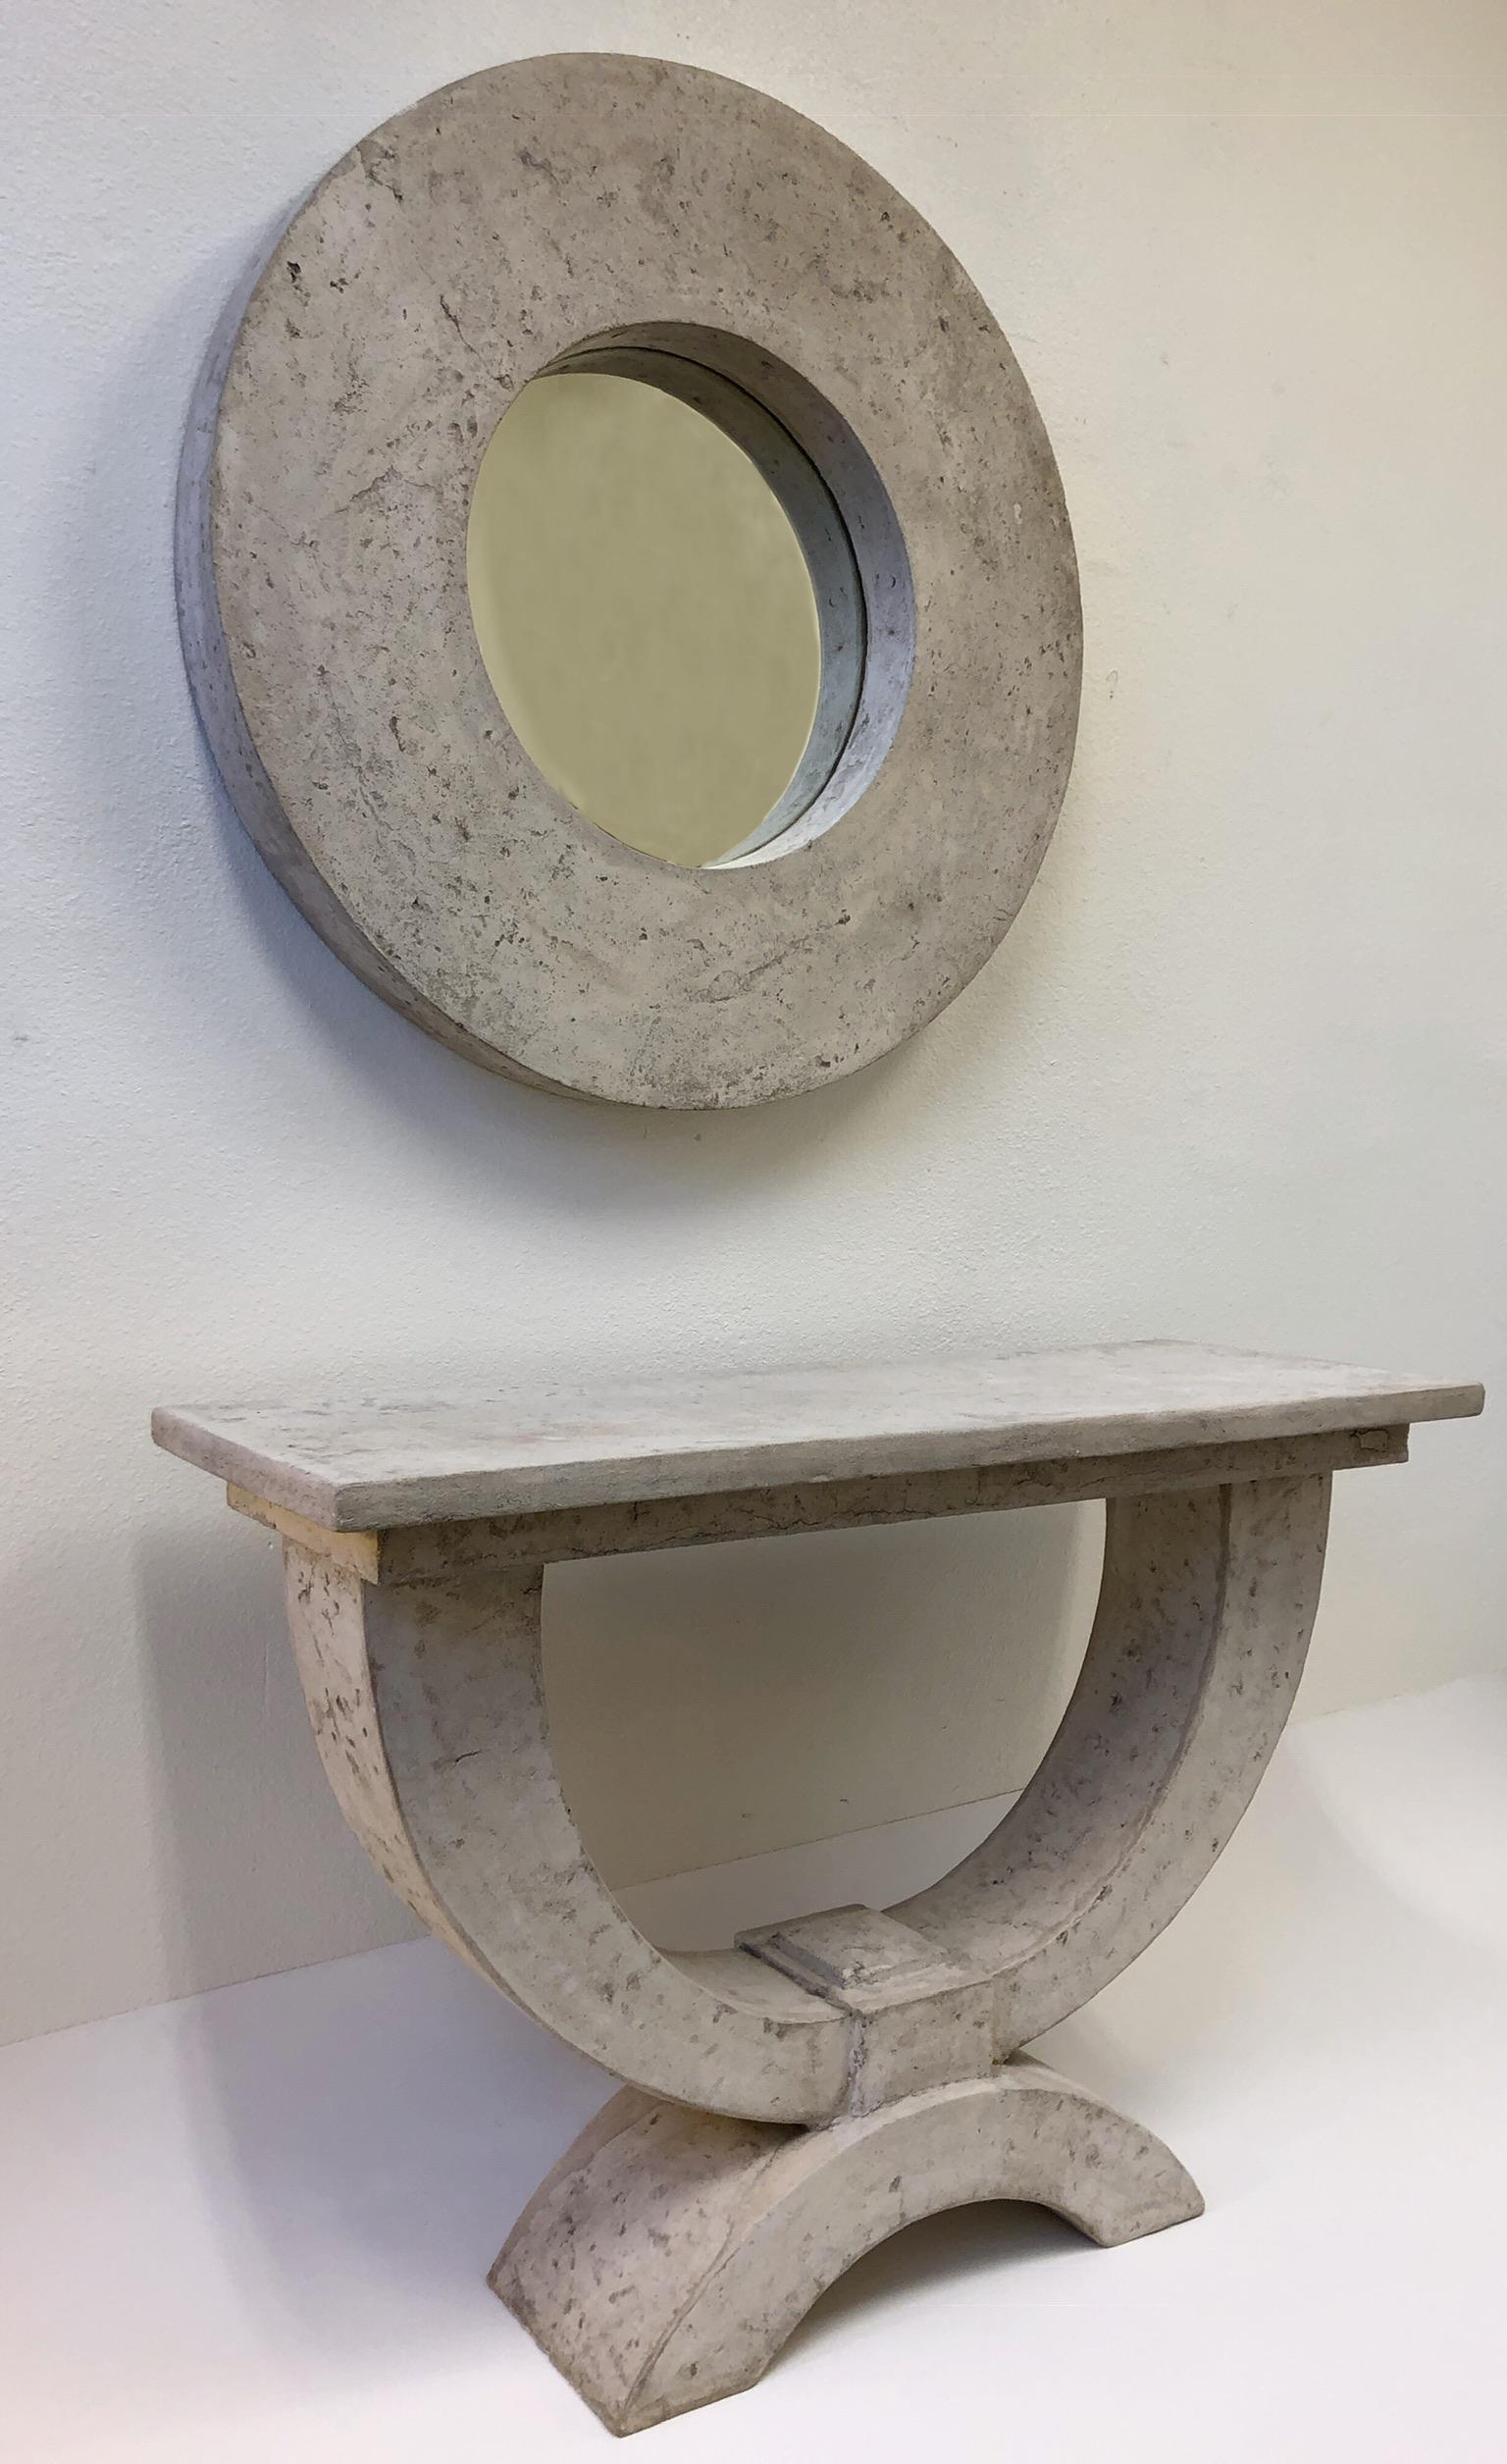 O spectaculaire table console et miroir mural en fausse pierre conçus par Michael Taylor. La table et le miroir sont construits en fibre de verre et ressemblent à de la pierre. Il peut être utilisé à l'intérieur ou à l'extérieur. 
Dim :
Miroir-